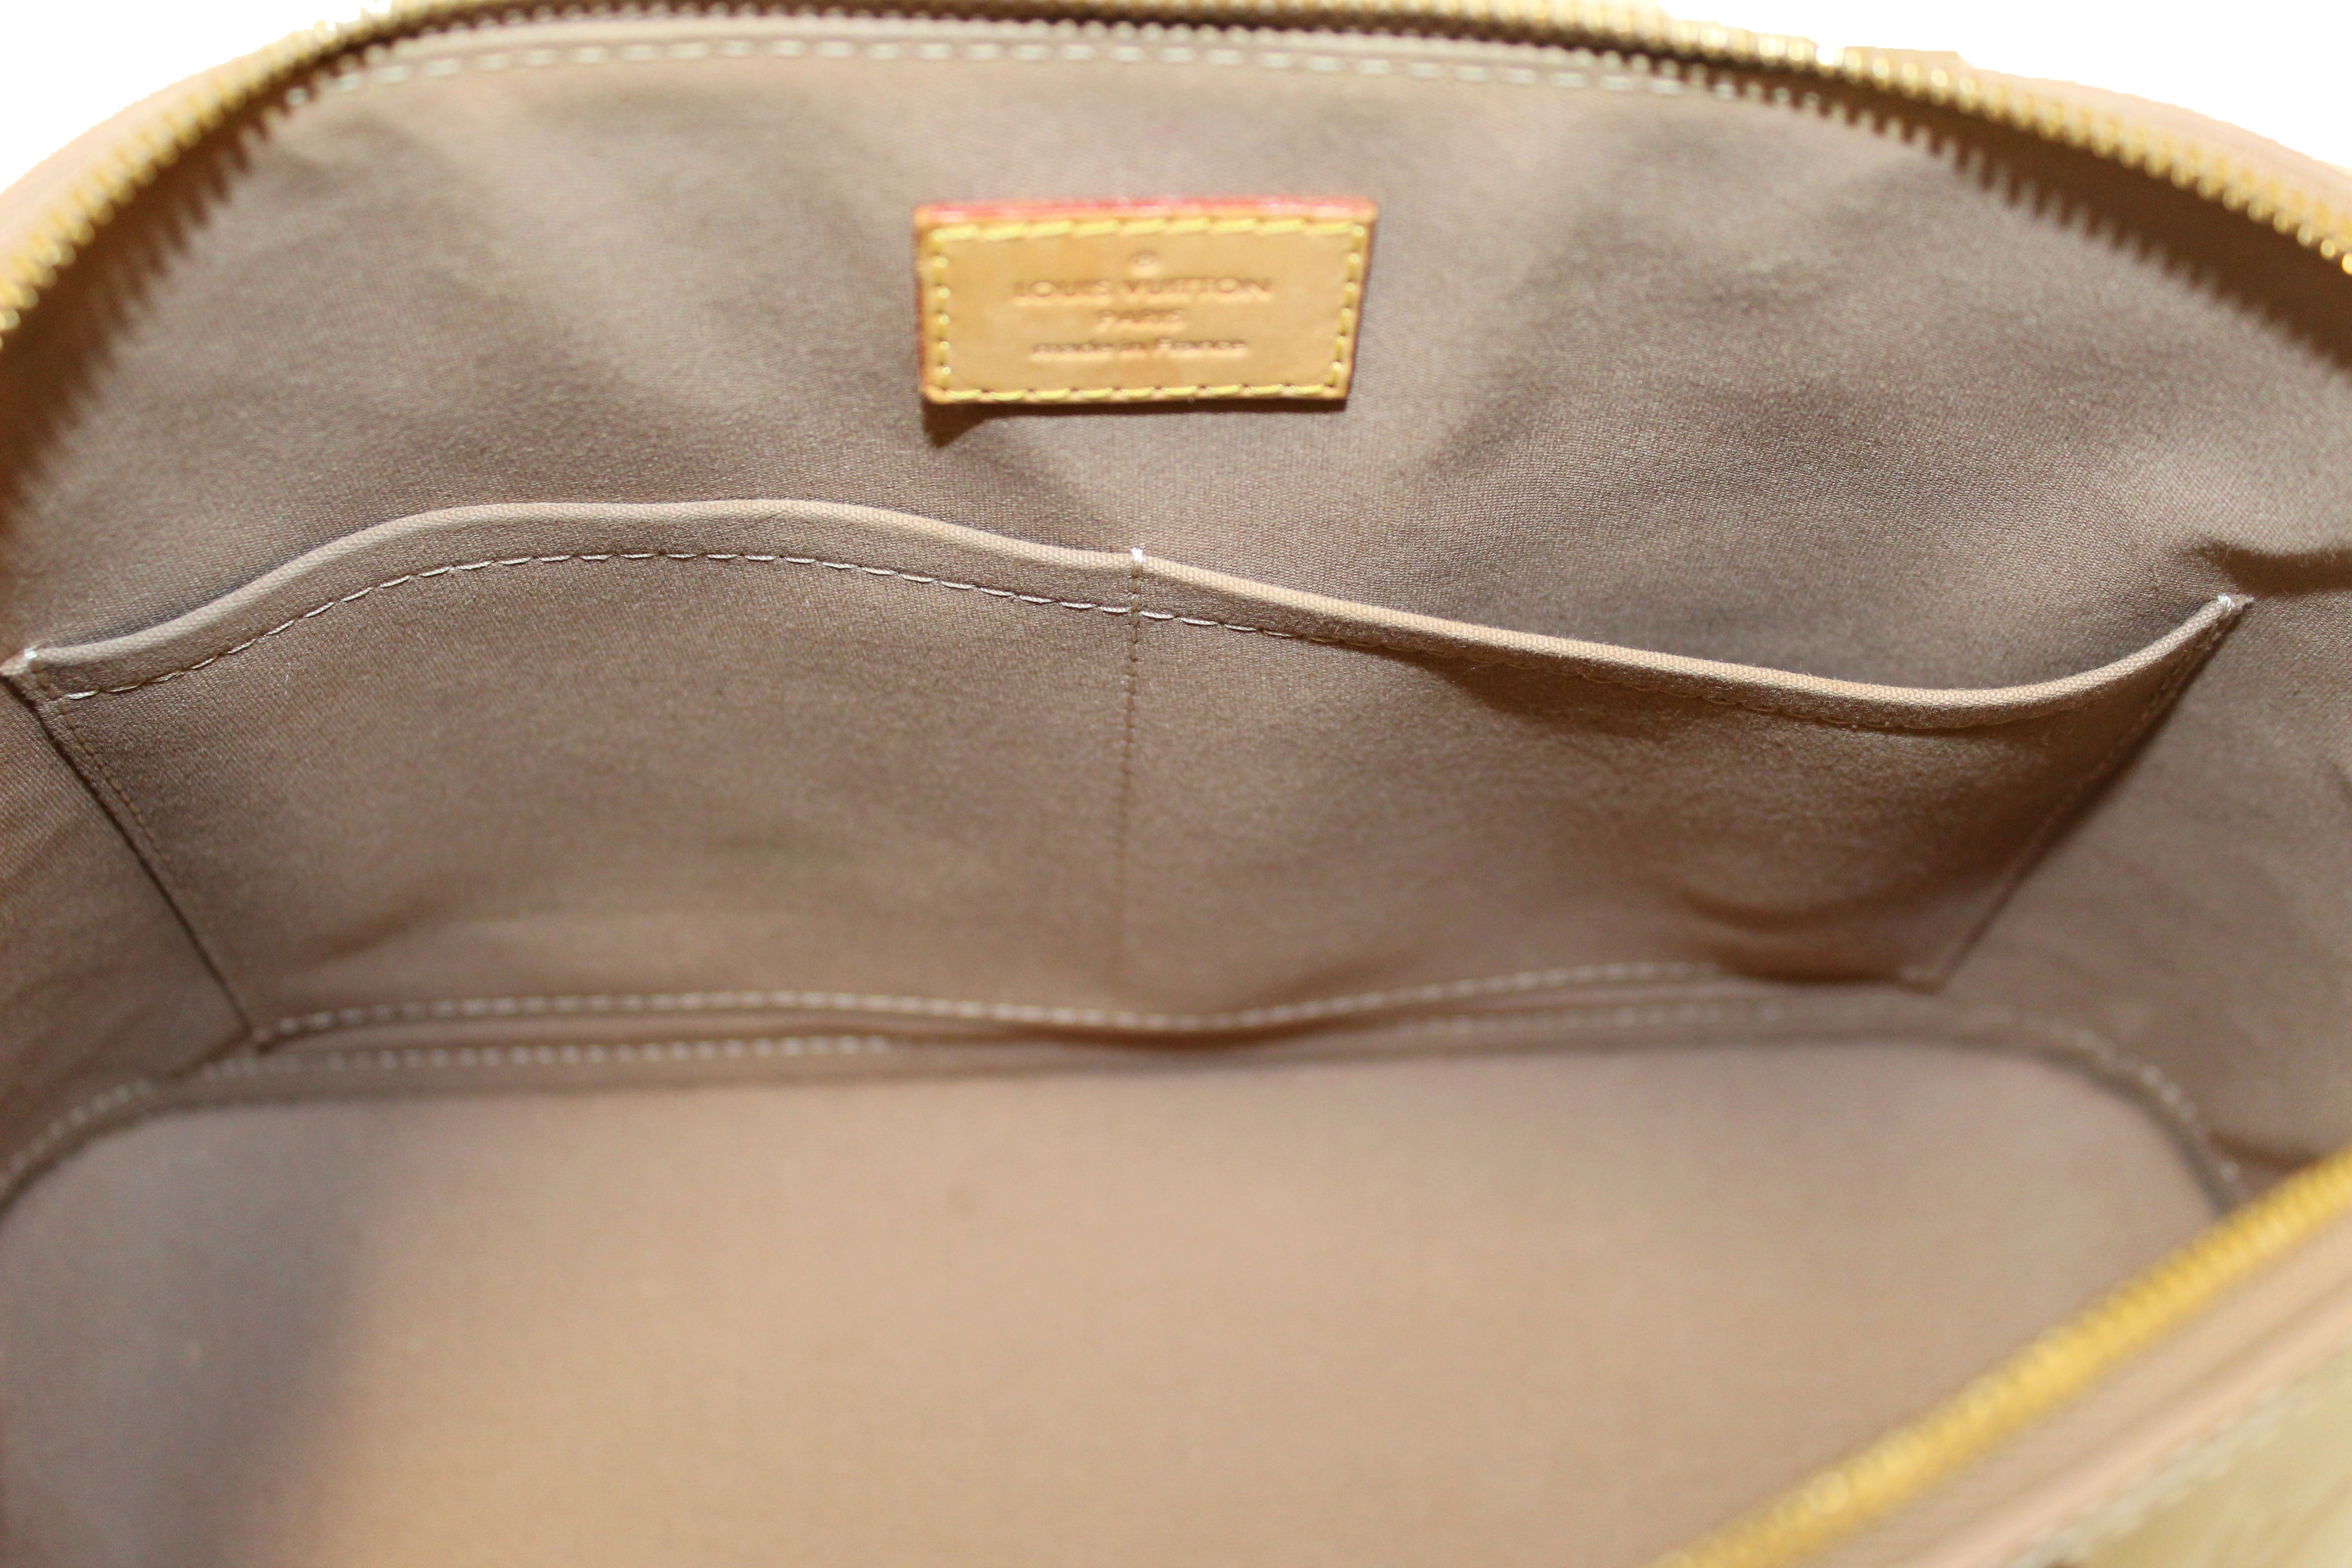 AUTHENTIC Vintage Louis Vuitton Alma PM Bag Brown Monogram US Seller  Excellent